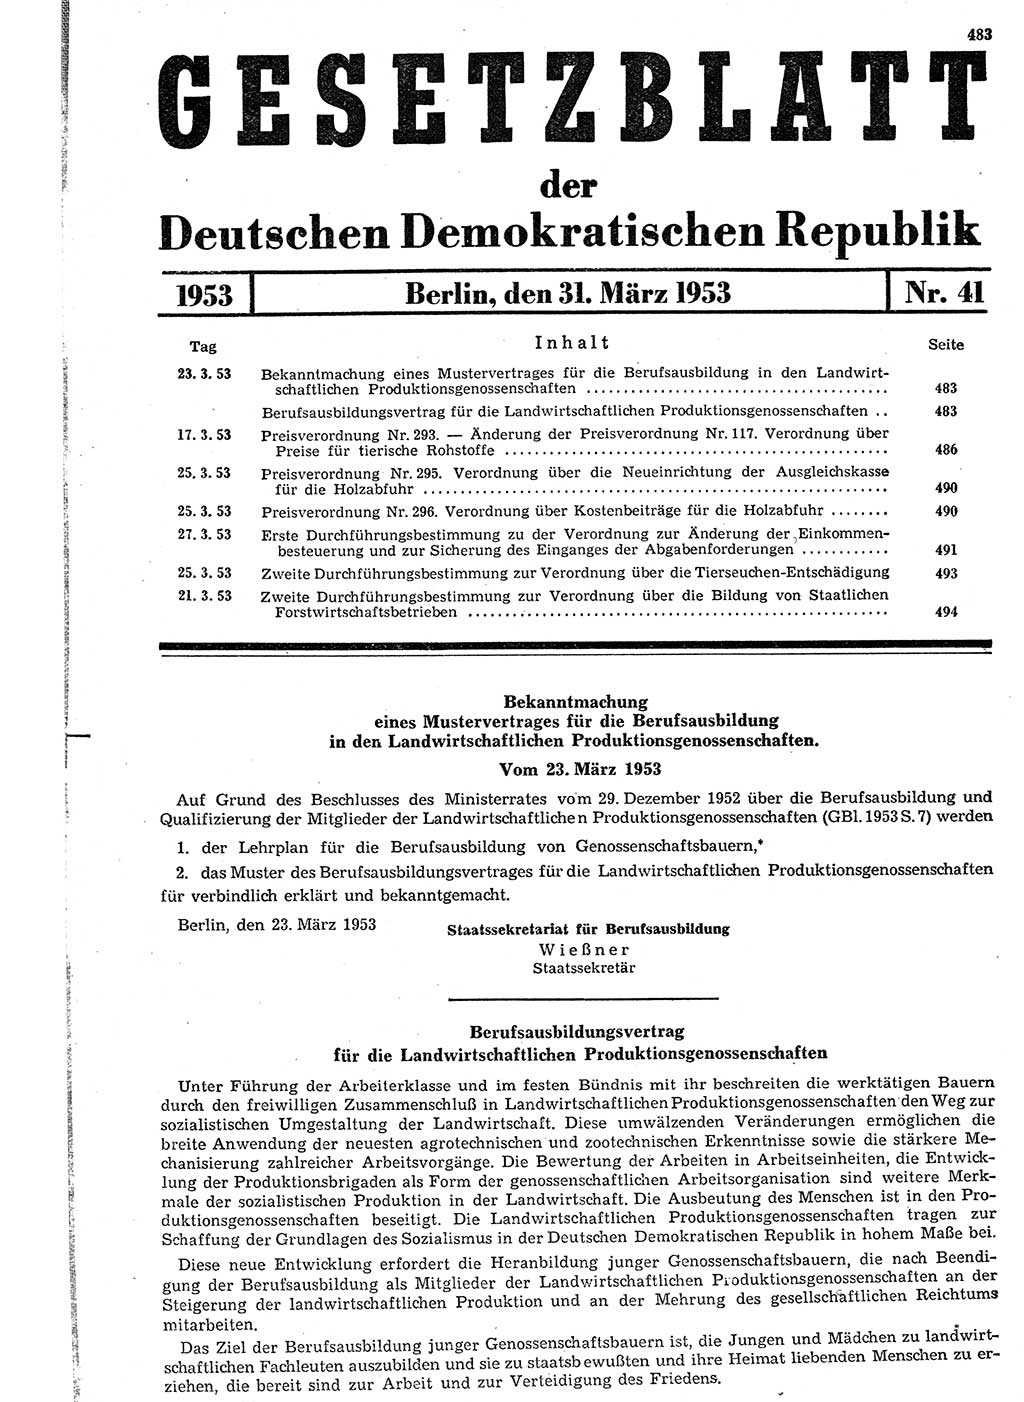 Gesetzblatt (GBl.) der Deutschen Demokratischen Republik (DDR) 1953, Seite 483 (GBl. DDR 1953, S. 483)